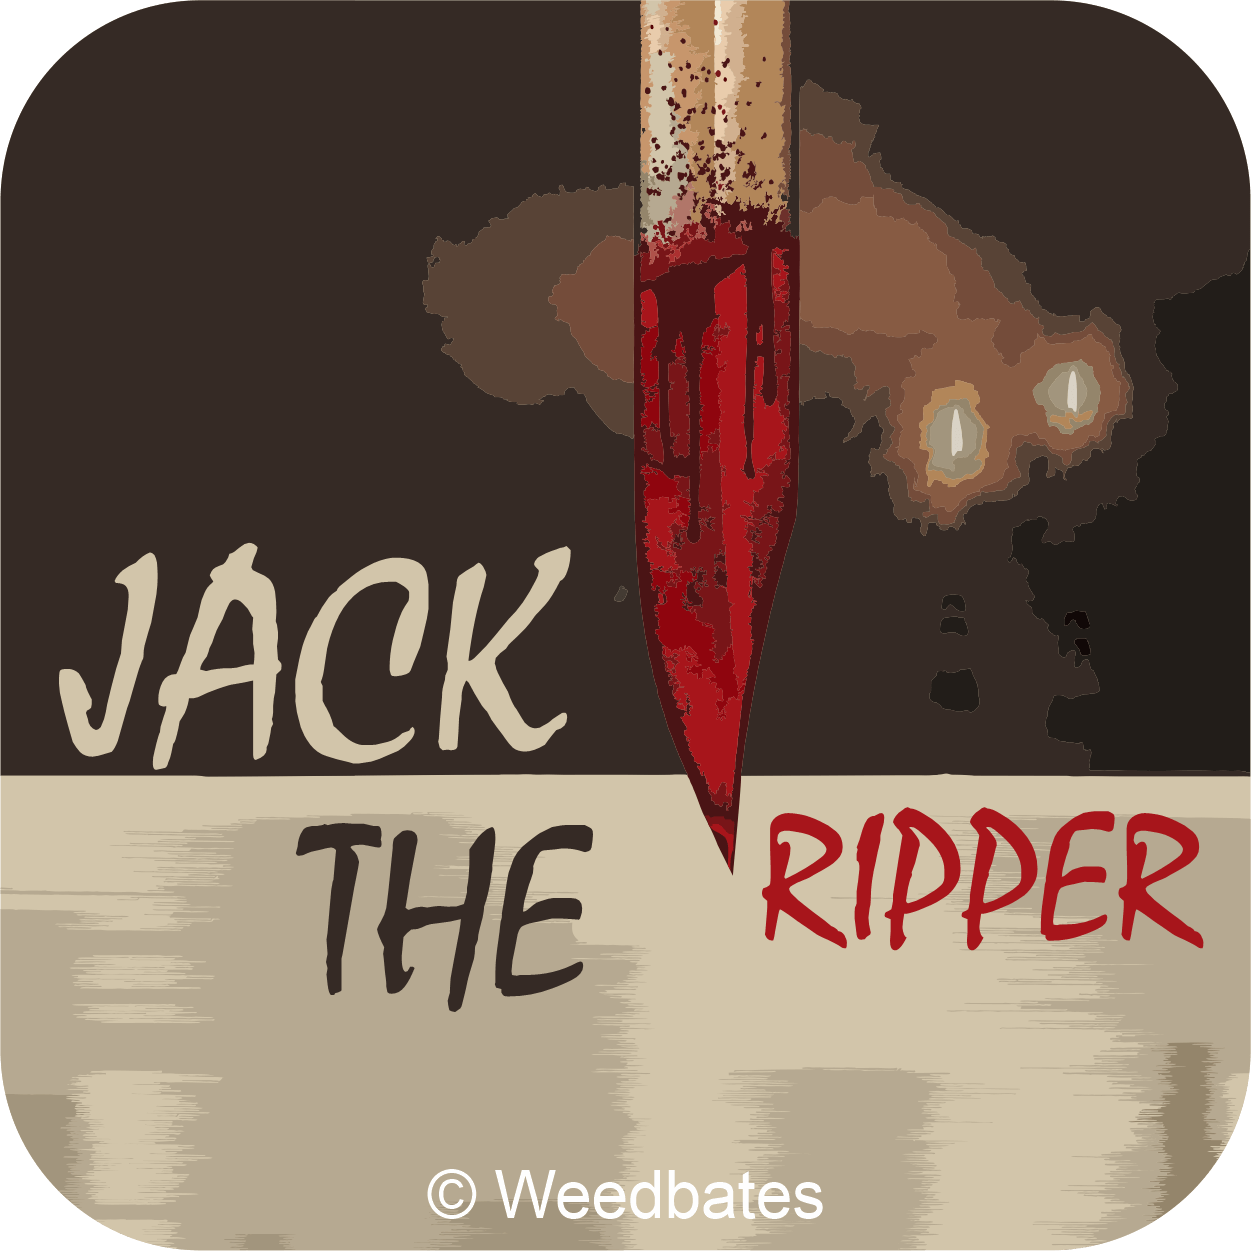 Jack the Ripper cannabis strain